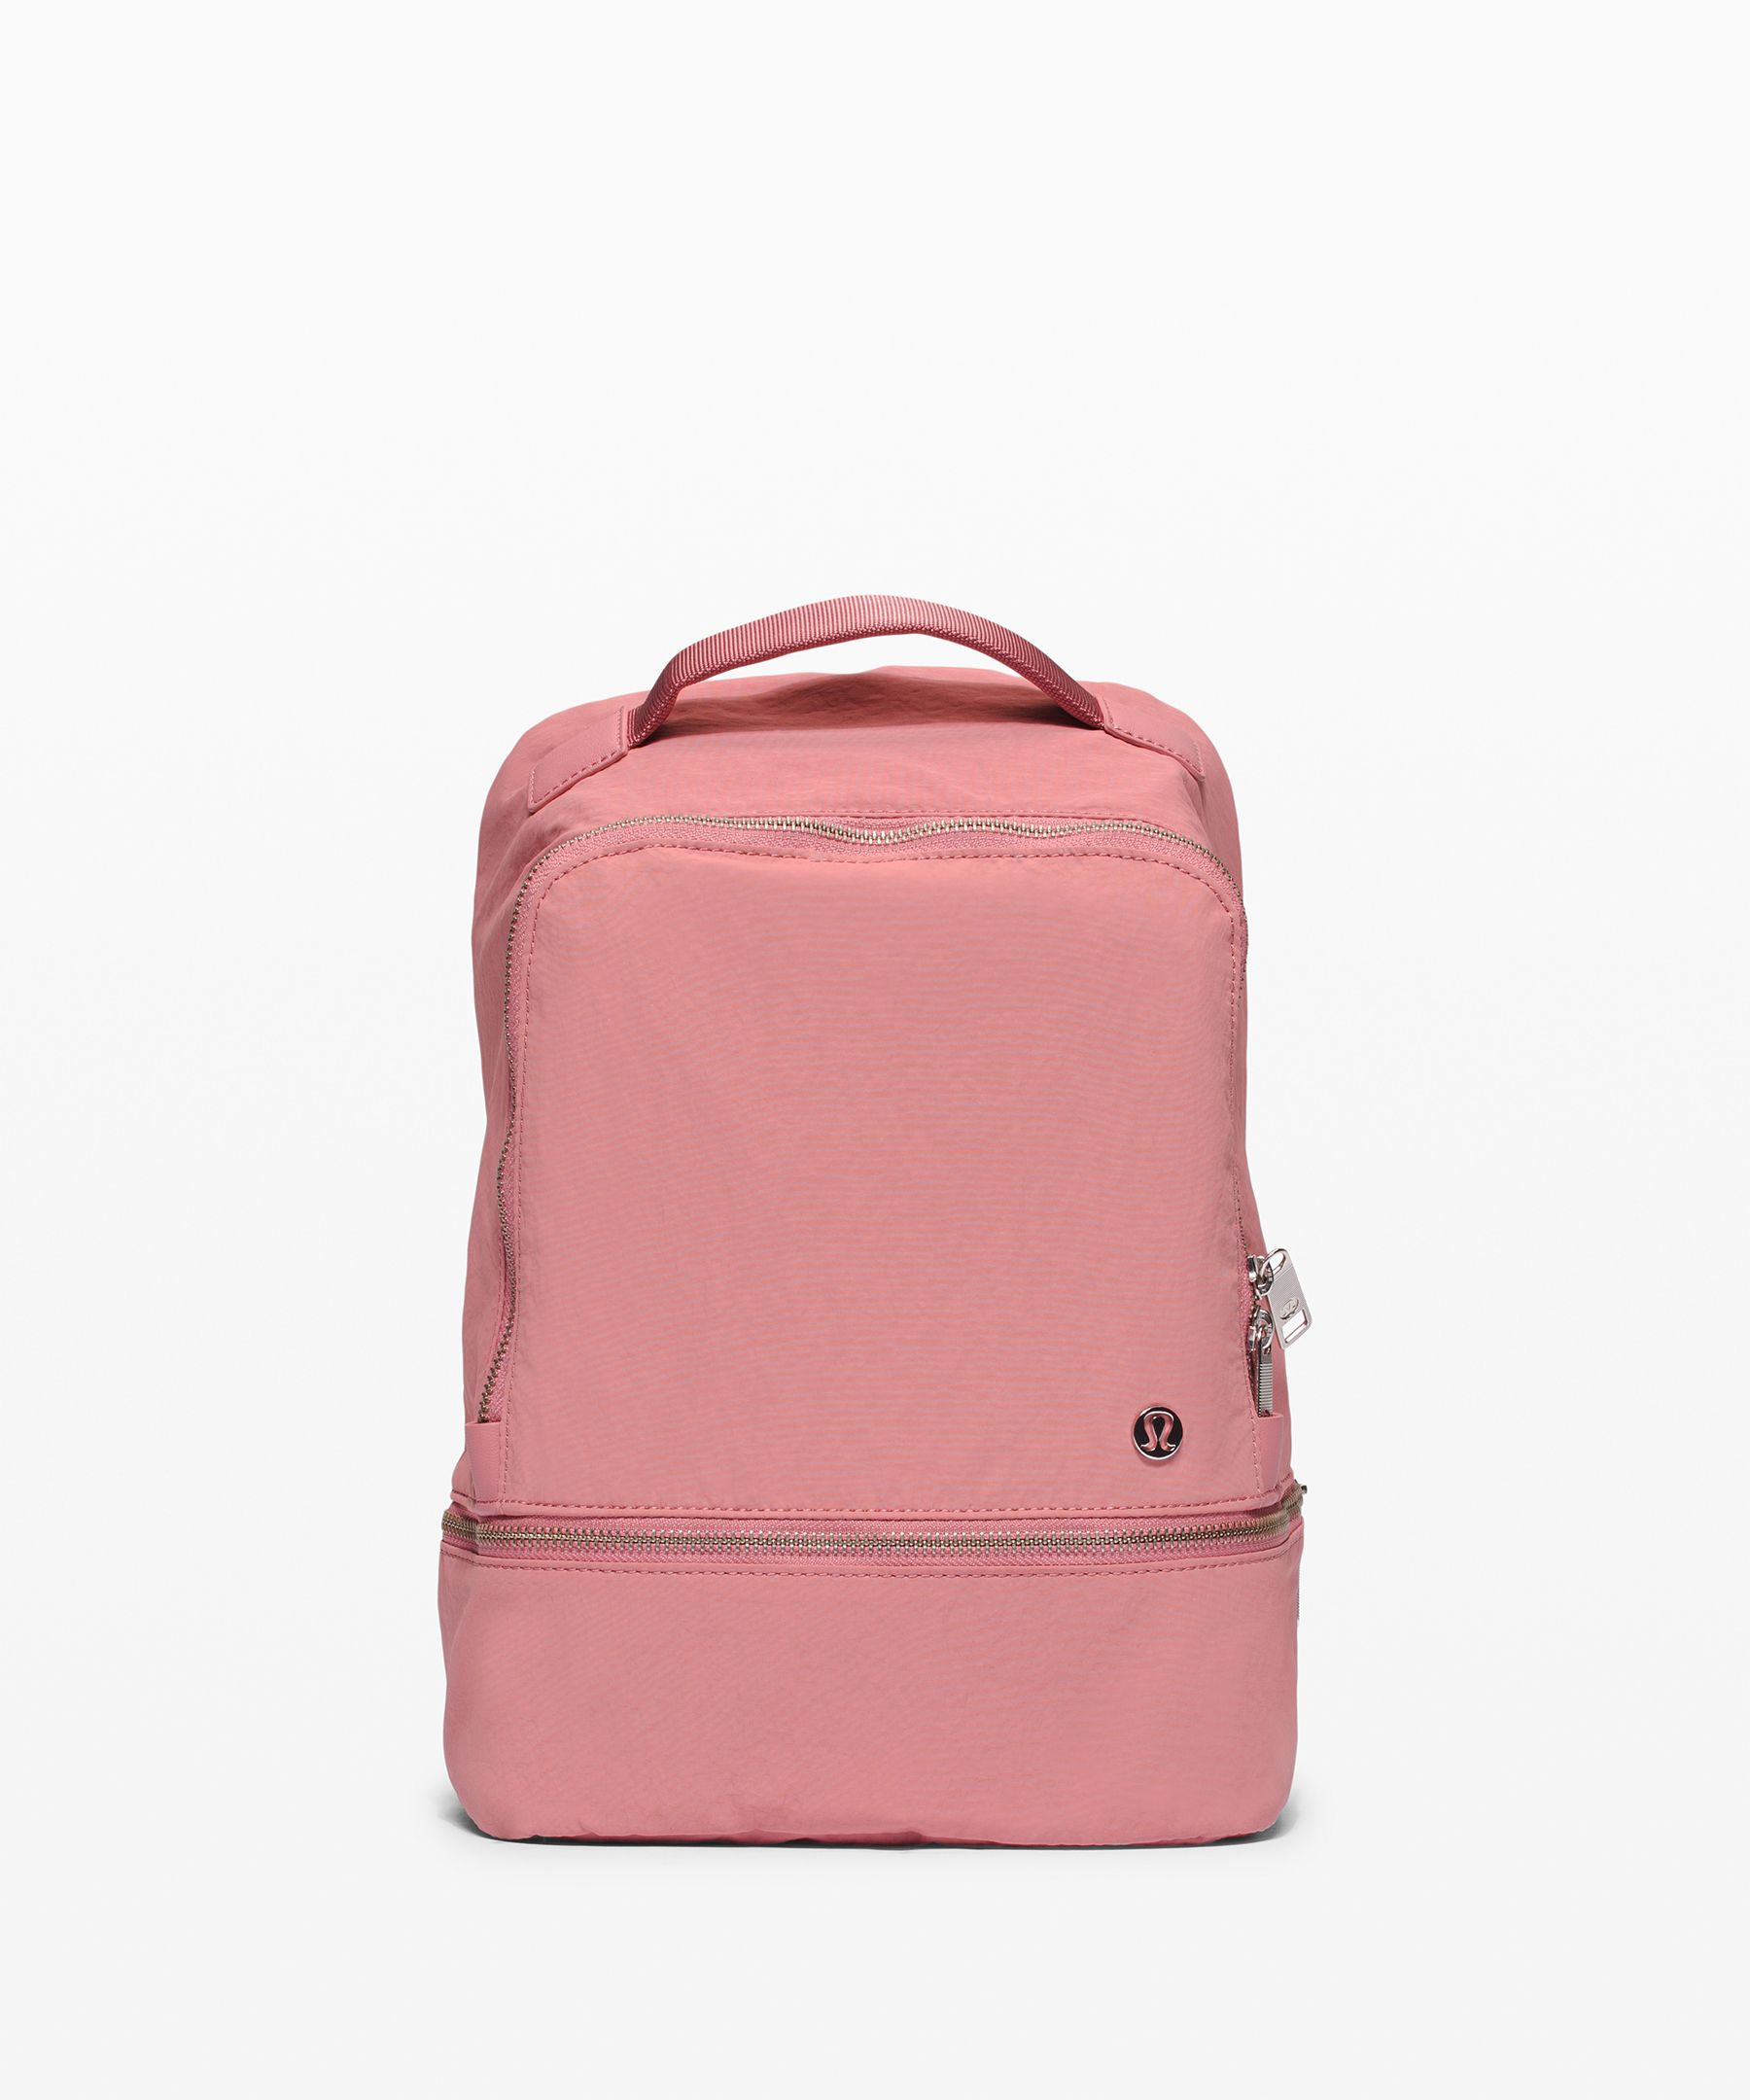 lululemon city adventurer mini backpack